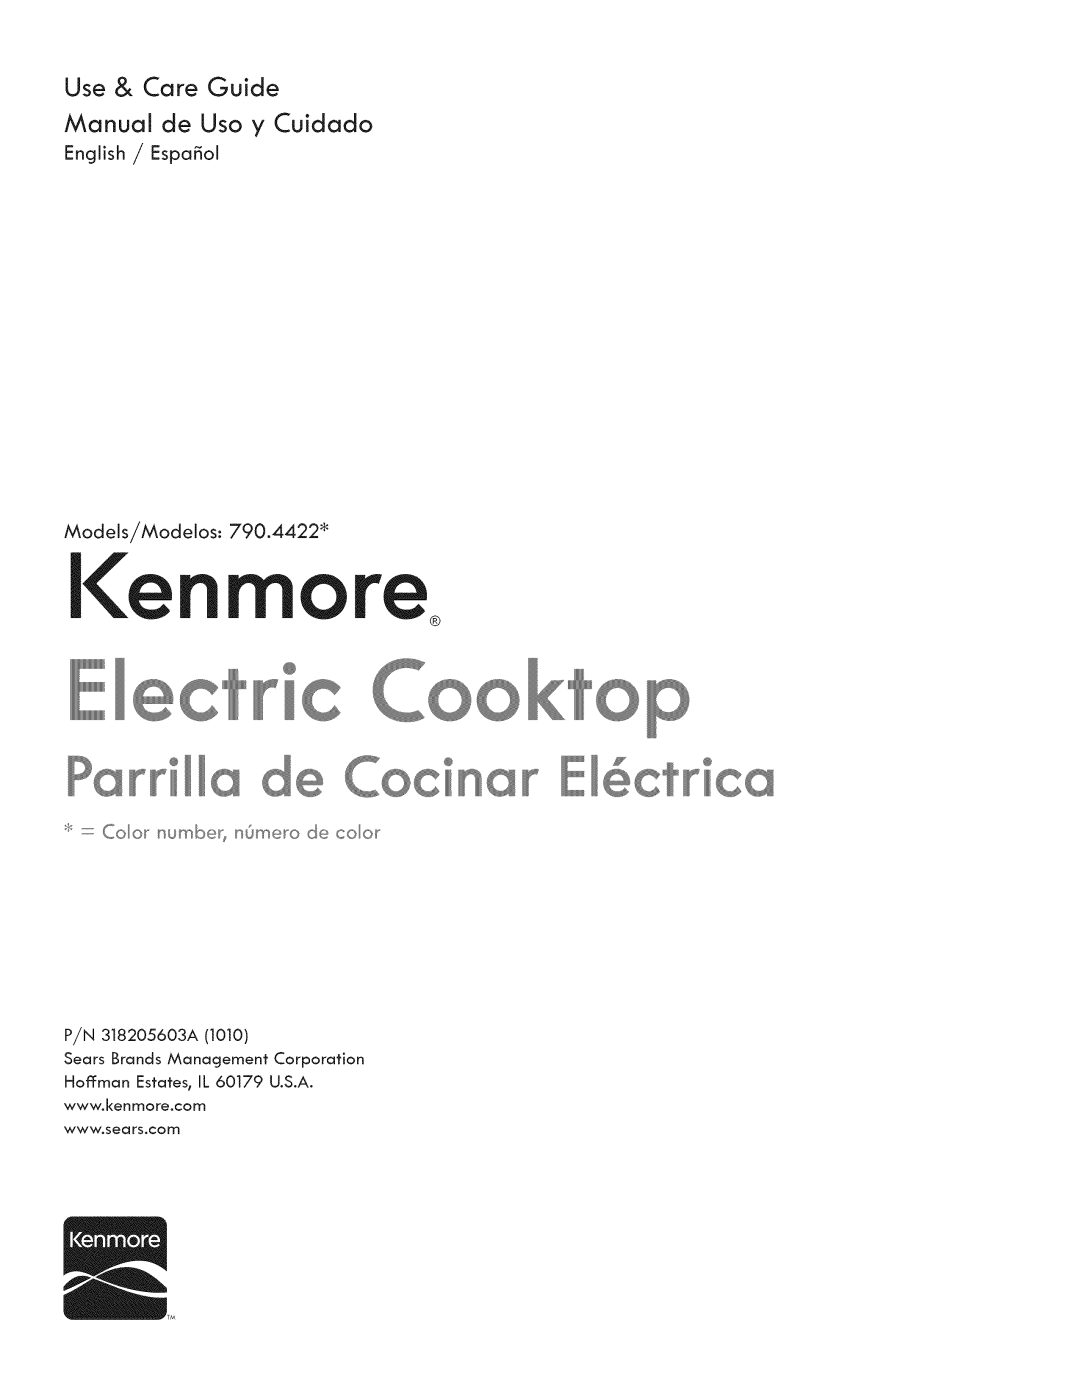 Kenmore 790.4422 manual Use & Care Guide, P rrll, n_r EI6ctri, Manual de Uso y Cuidado, P/N SlS20S60SA1010 